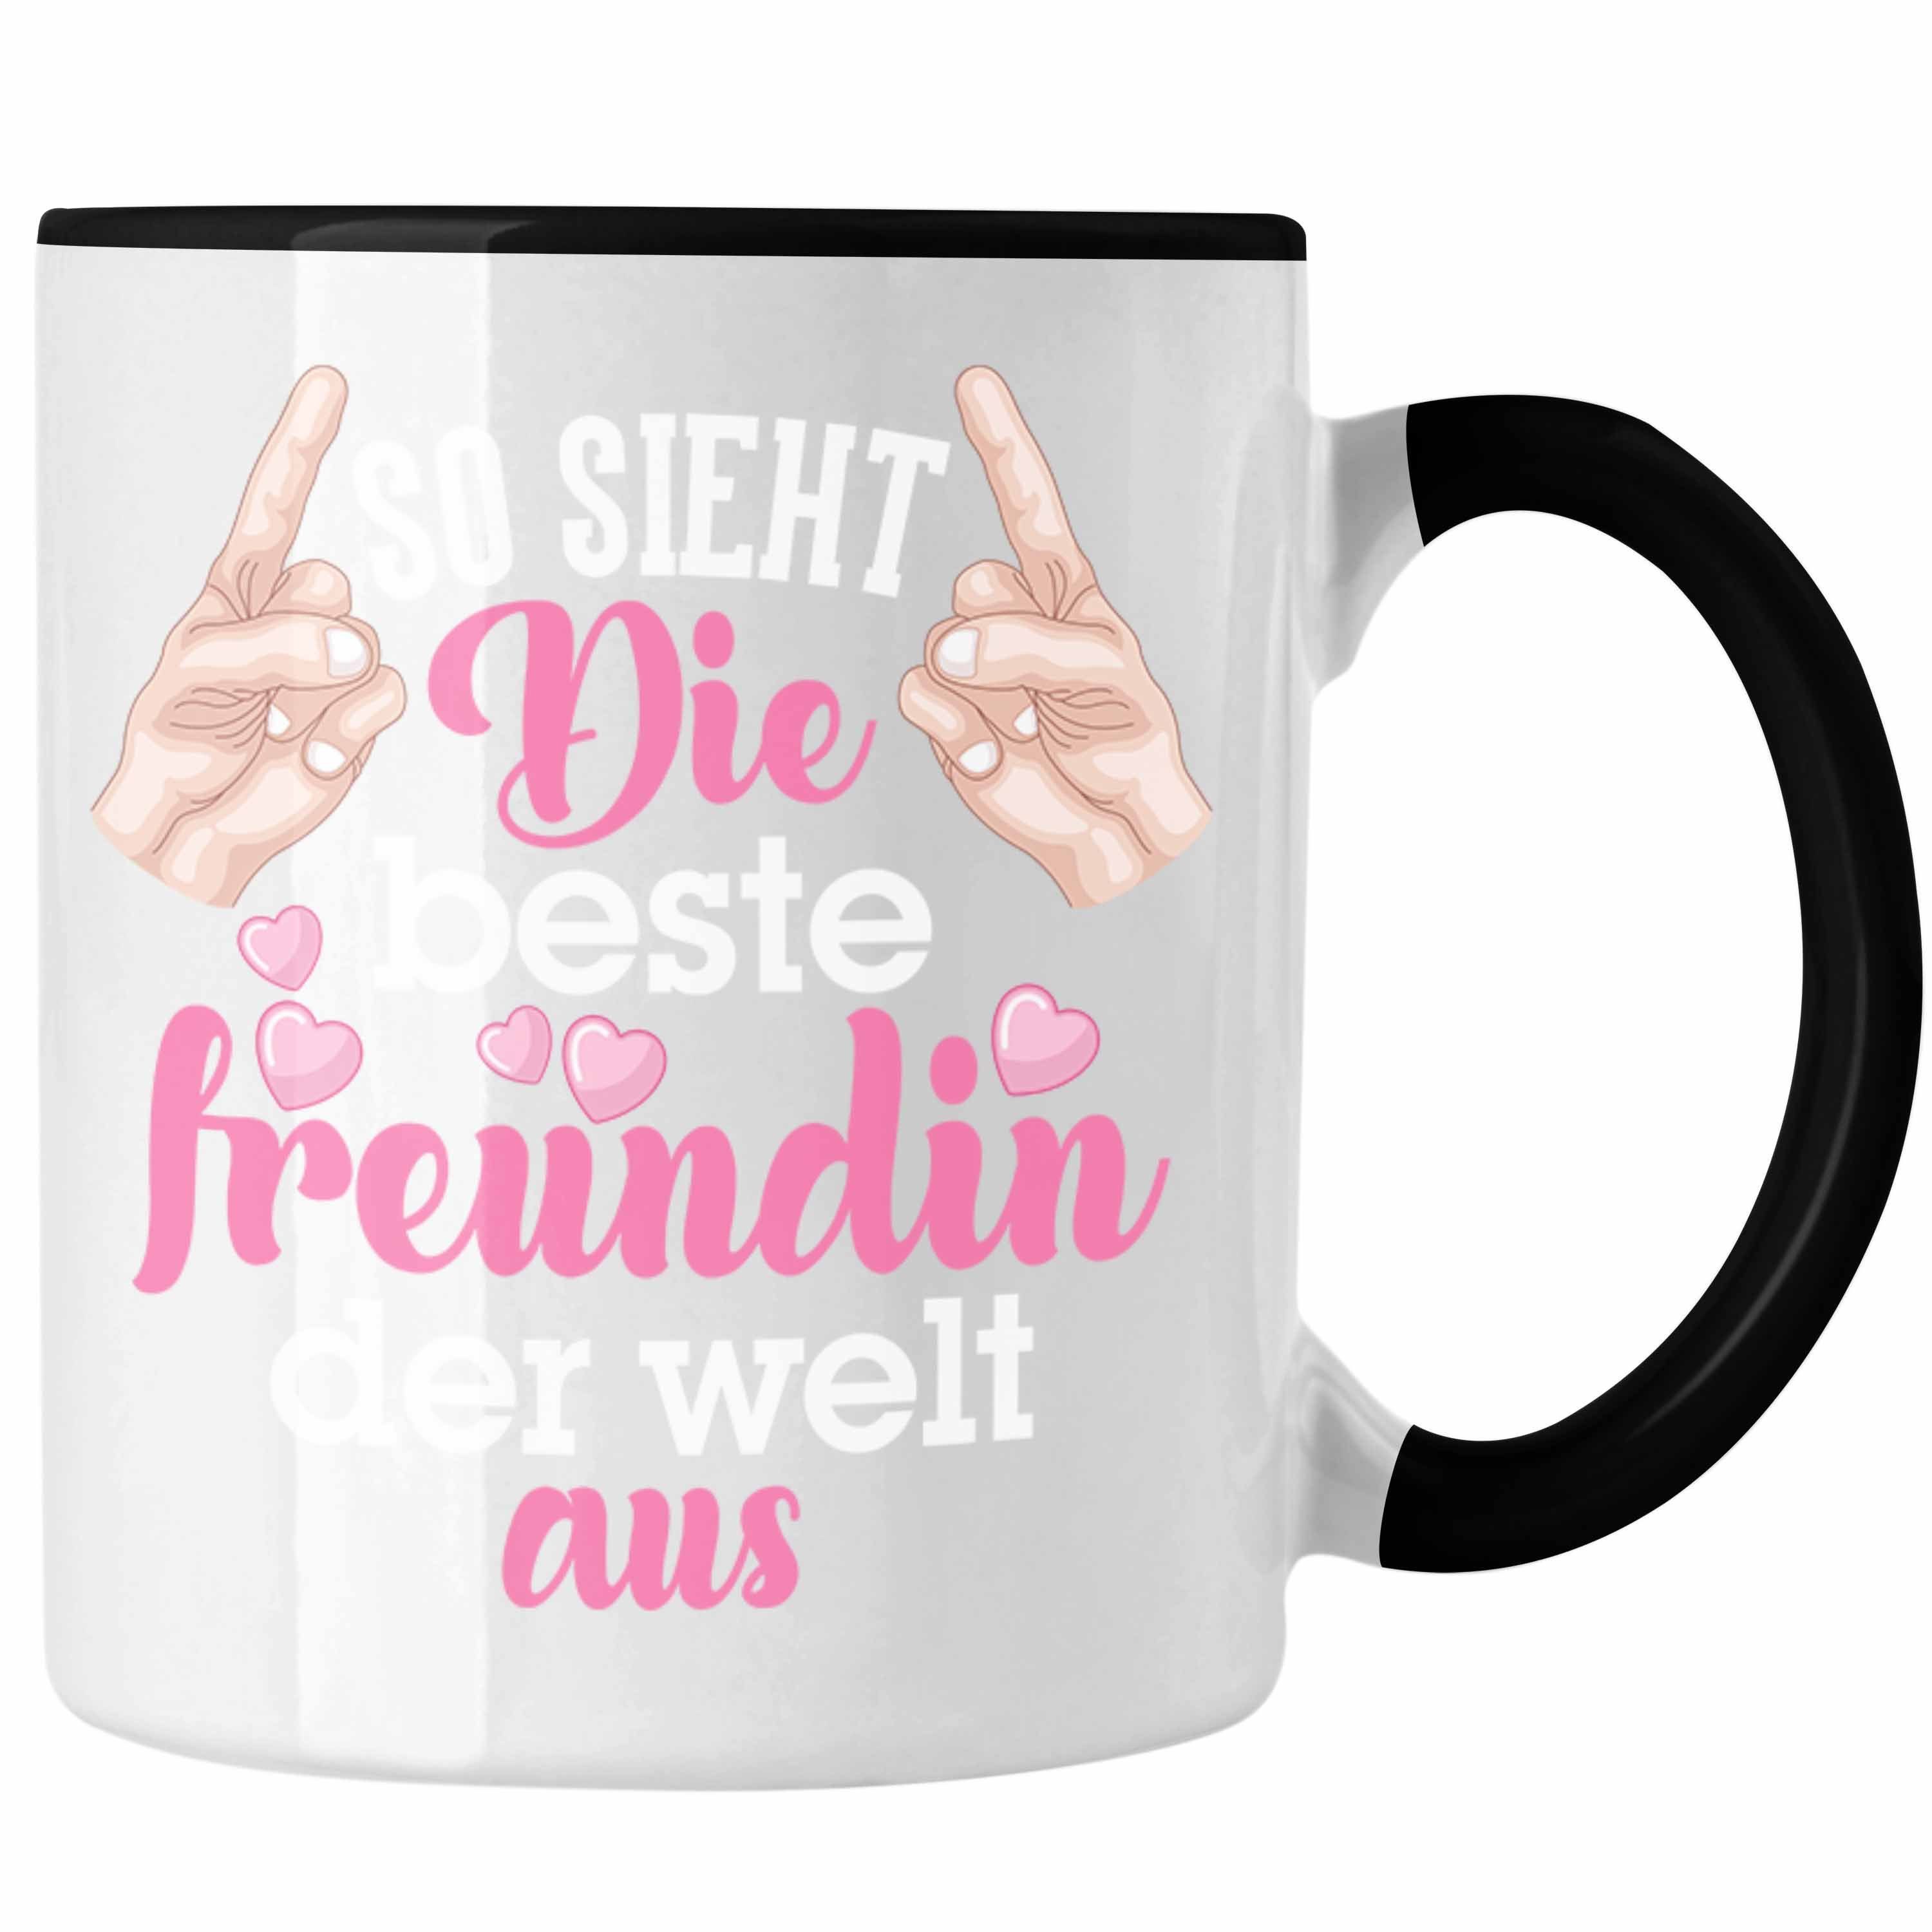 Trendation Tasse Trendation - Beste Freundin Tasse Geschenk Kaffeetasse Geschenkidee BFF Allerbeste Freundin Spruch Geburtstag Freundinnen Geschenkidee Schwarz